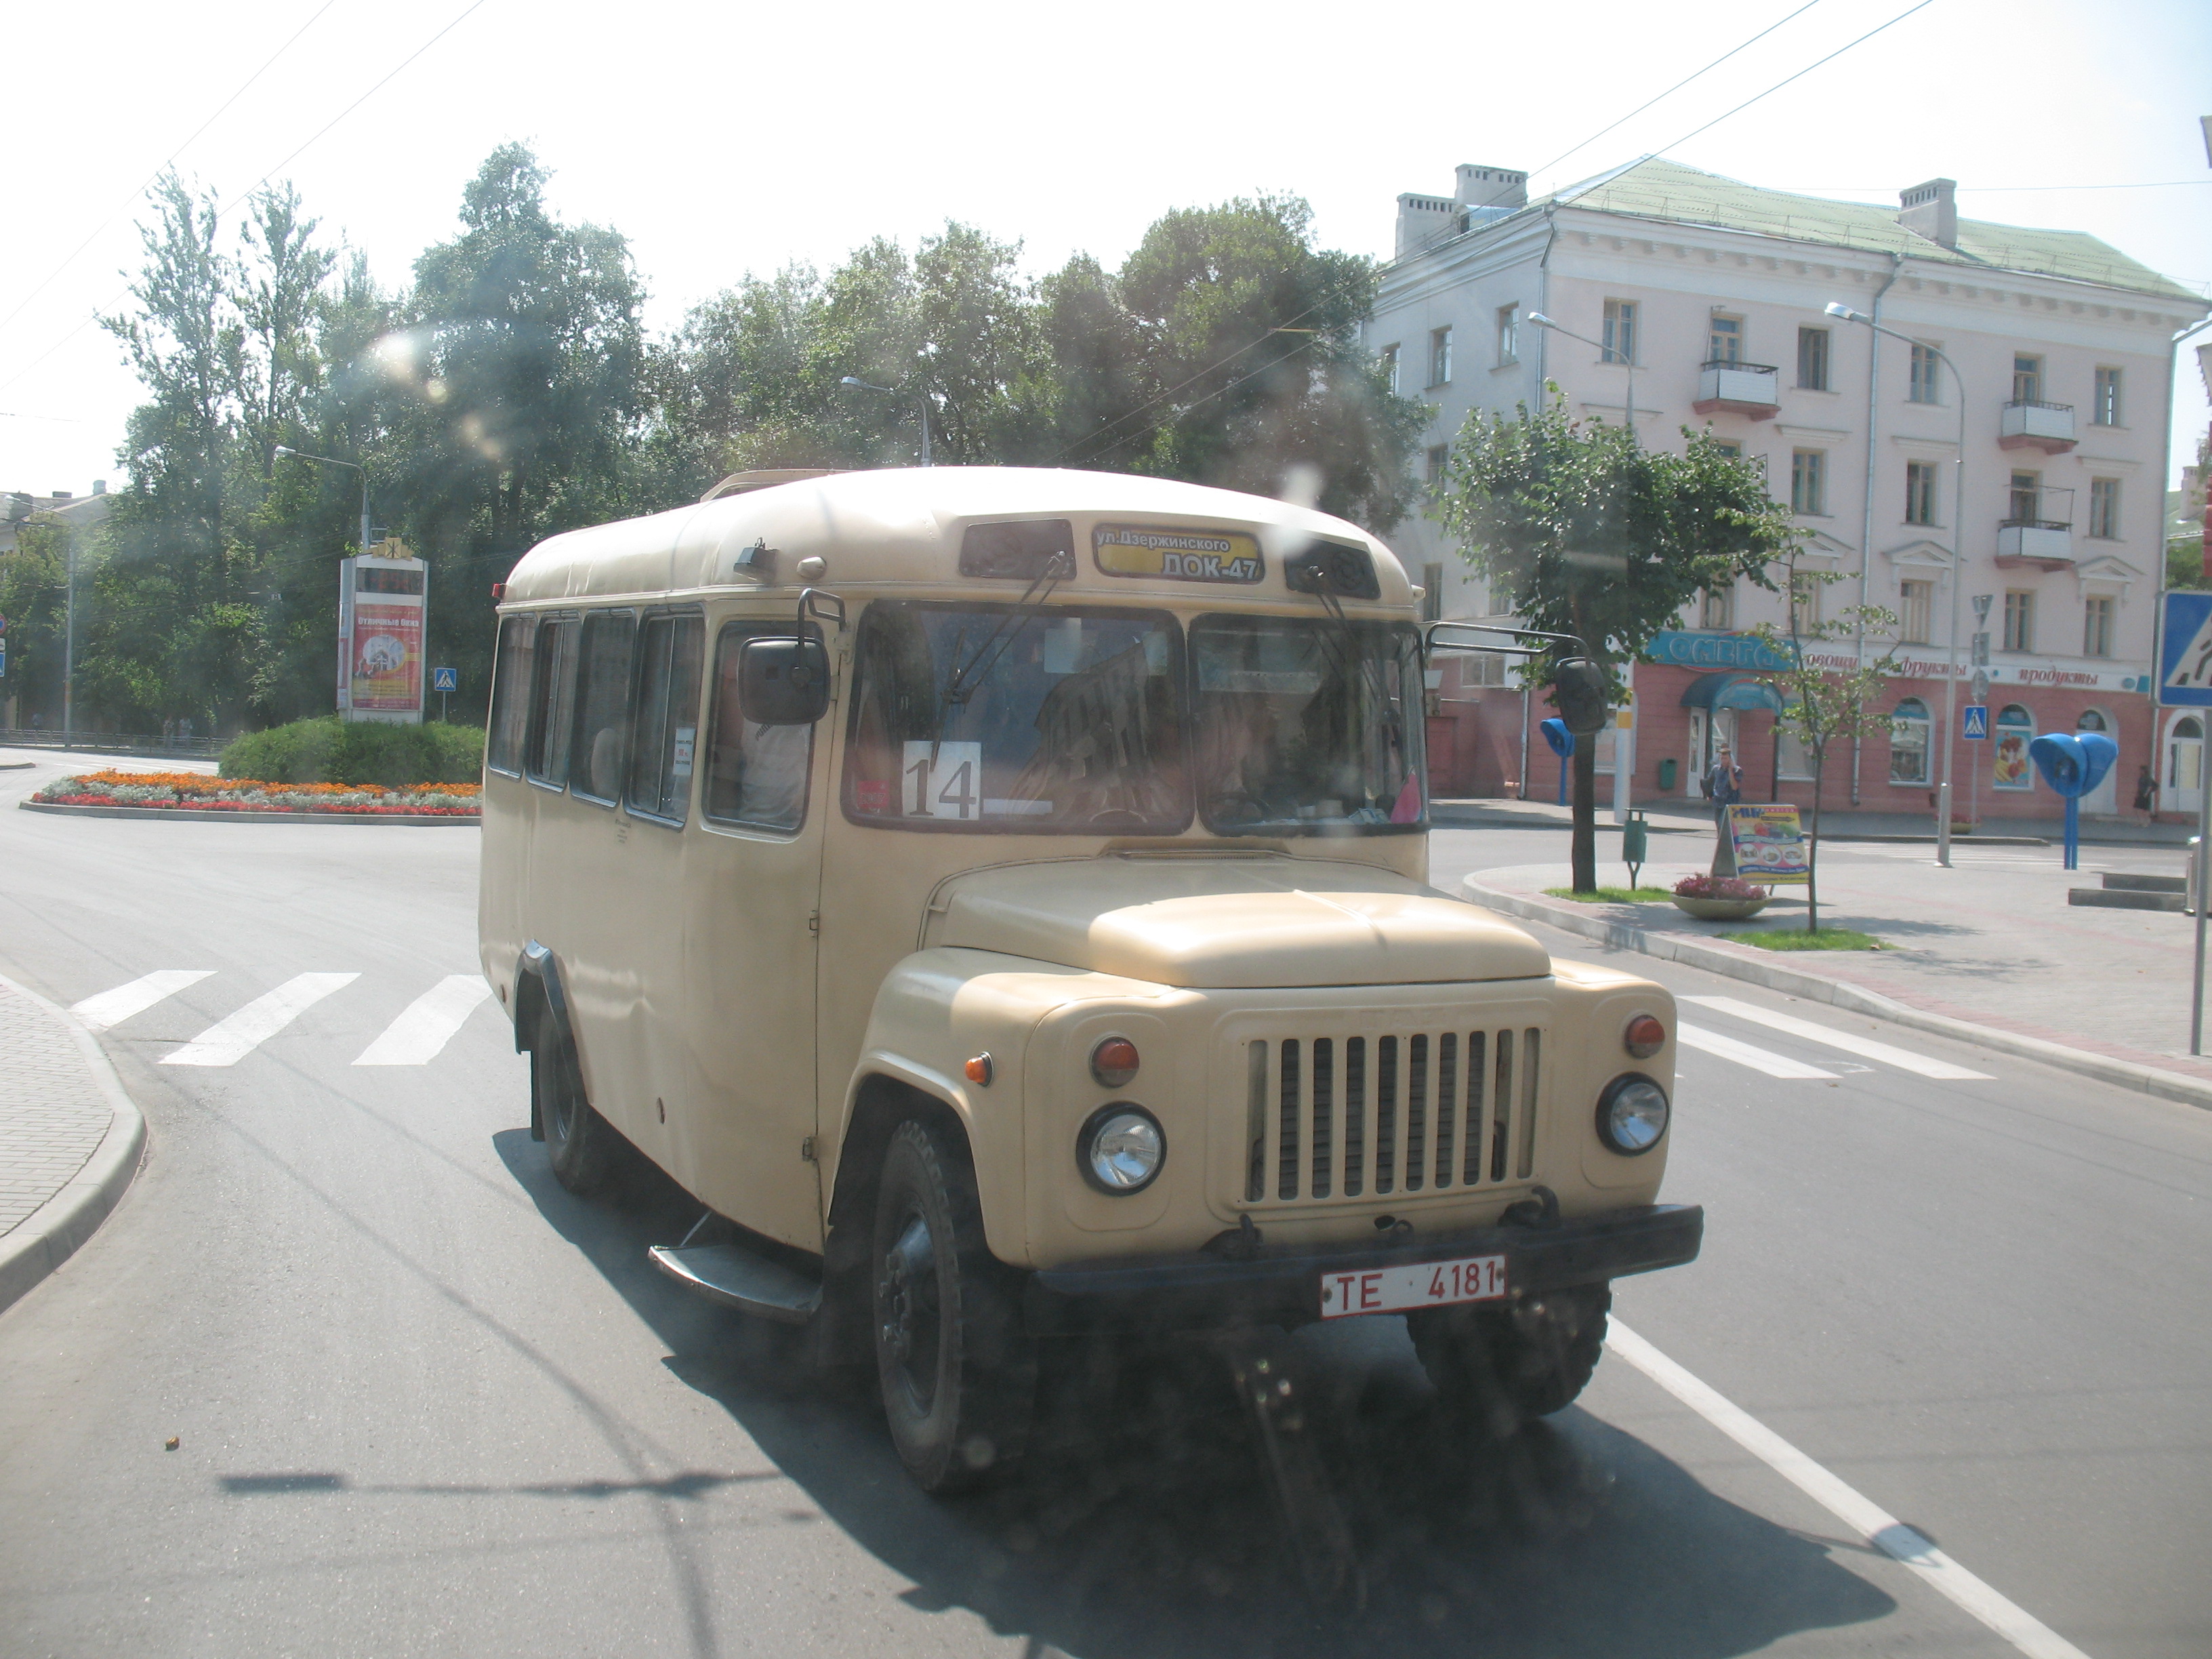 Городской автобус КАВЗ-3271 TE 4181